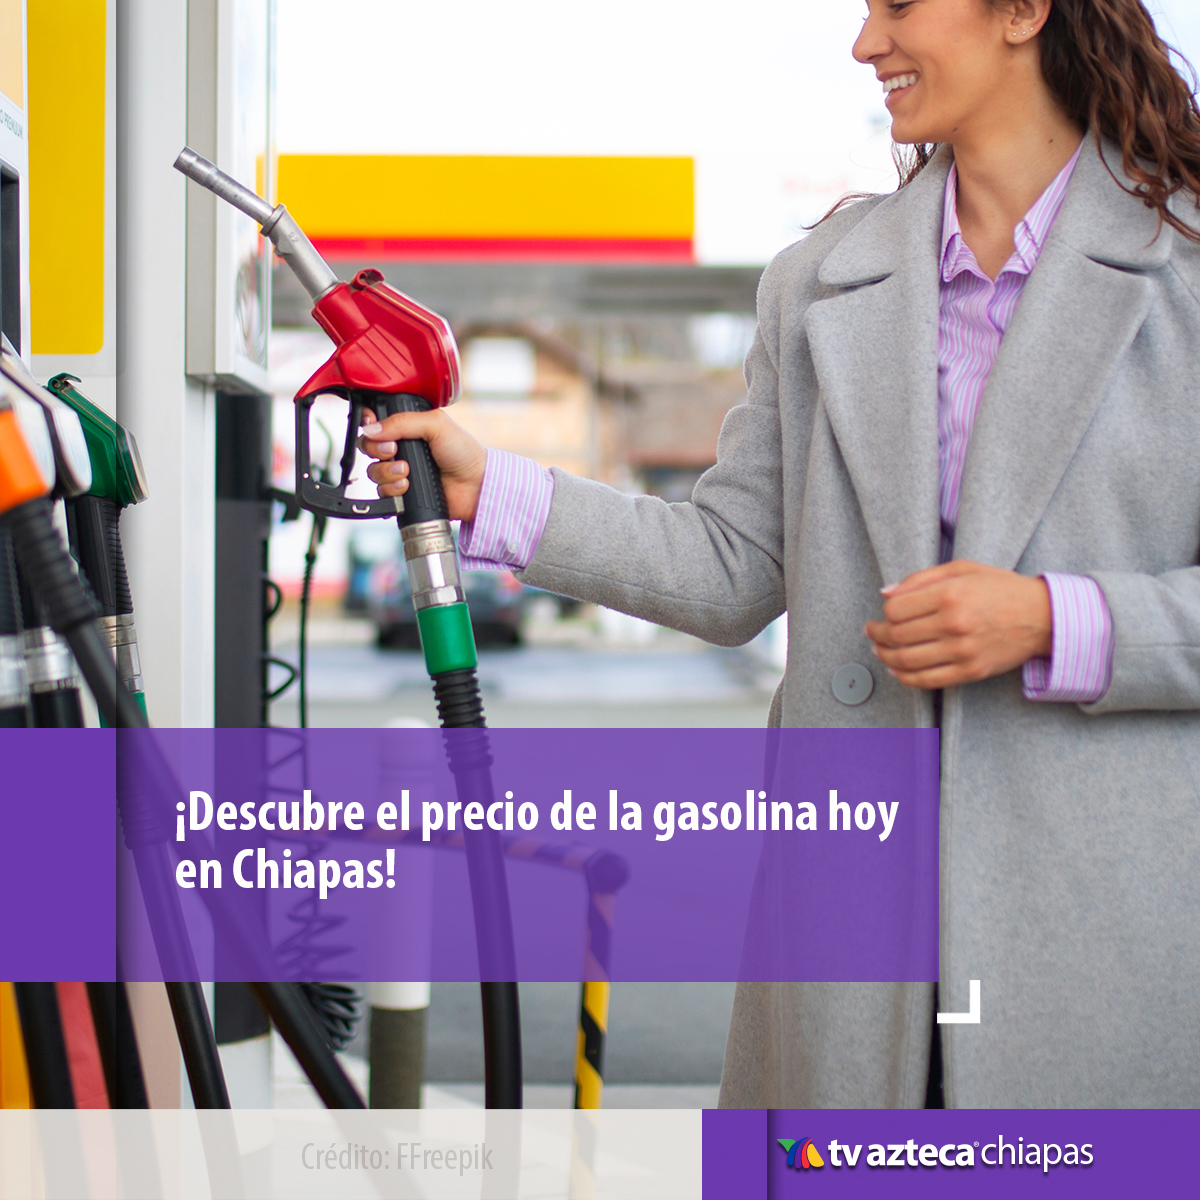 🚗🛢️ ¡Importante actualización para Chiapas! Descubre la nota sobre el precio de la gasolina hoy en tu región. Mantente al tanto de las novedades ⛽📰 

aztecachiapas.com/noticias/notas…

 #GasolinaChiapas #PrecioCombustible #NoticiasLocales